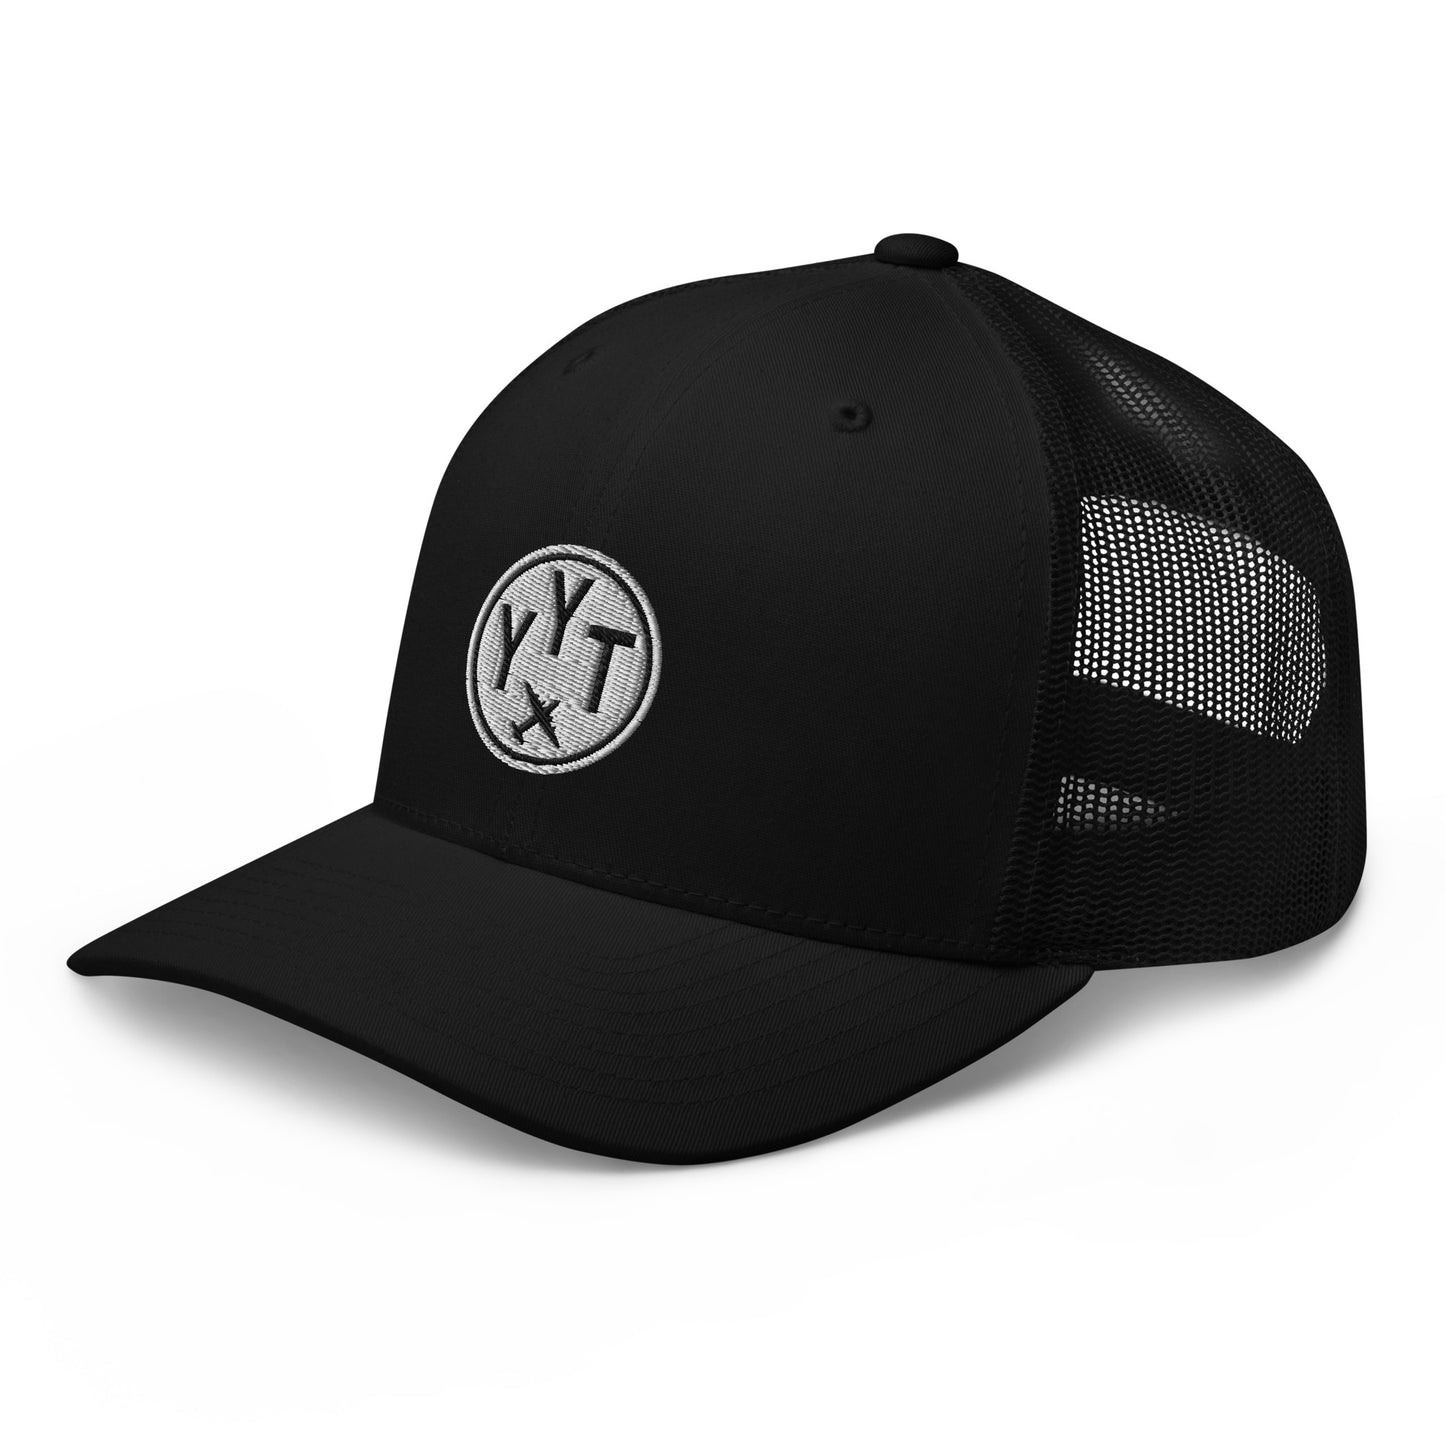 Roundel Trucker Hat - Black & White • YYT St. John's • YHM Designs - Image 08